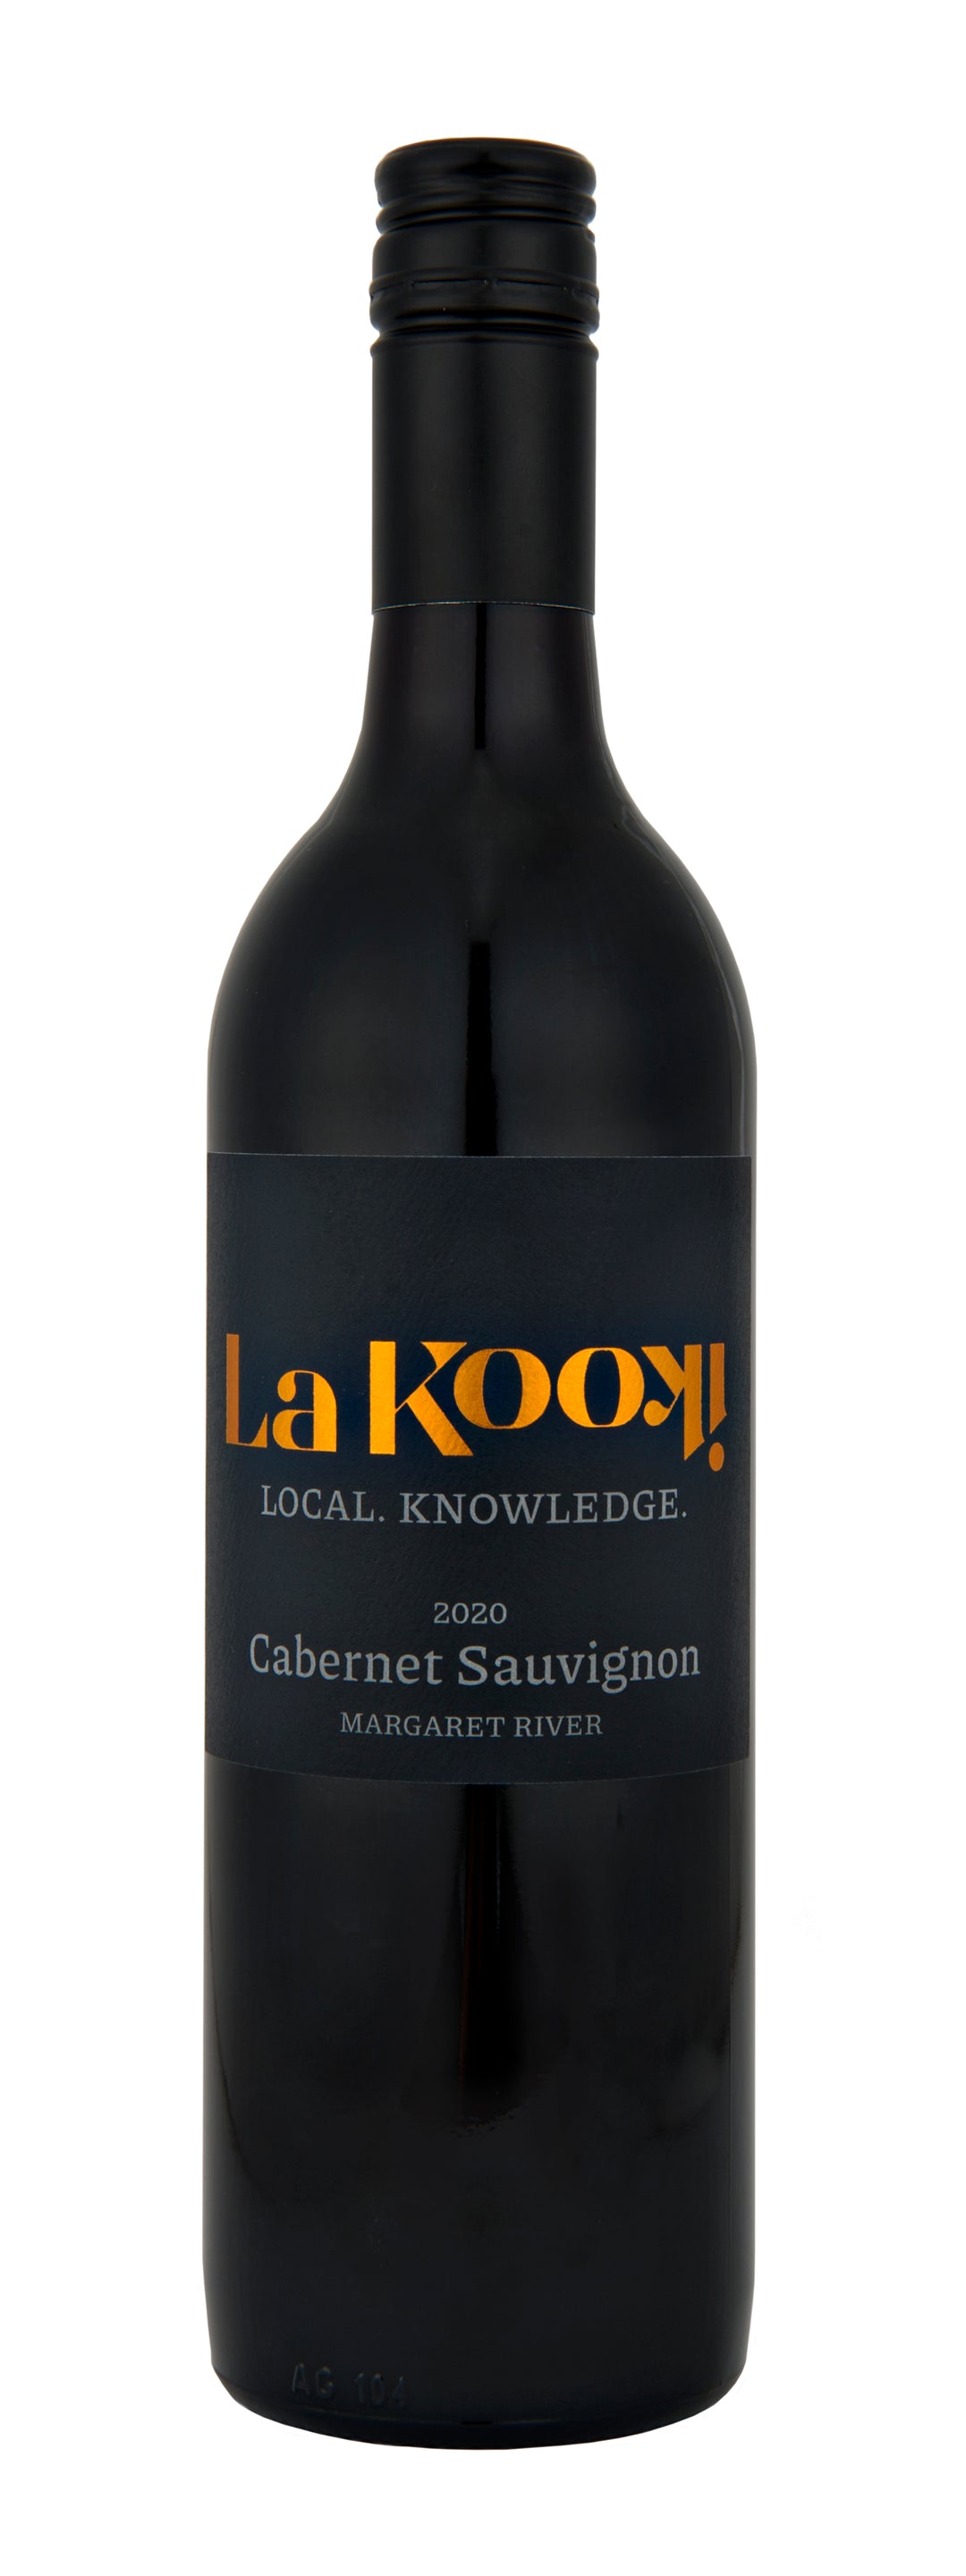 La Kooki Local Knowledge Cabernet Sauvignon 2020